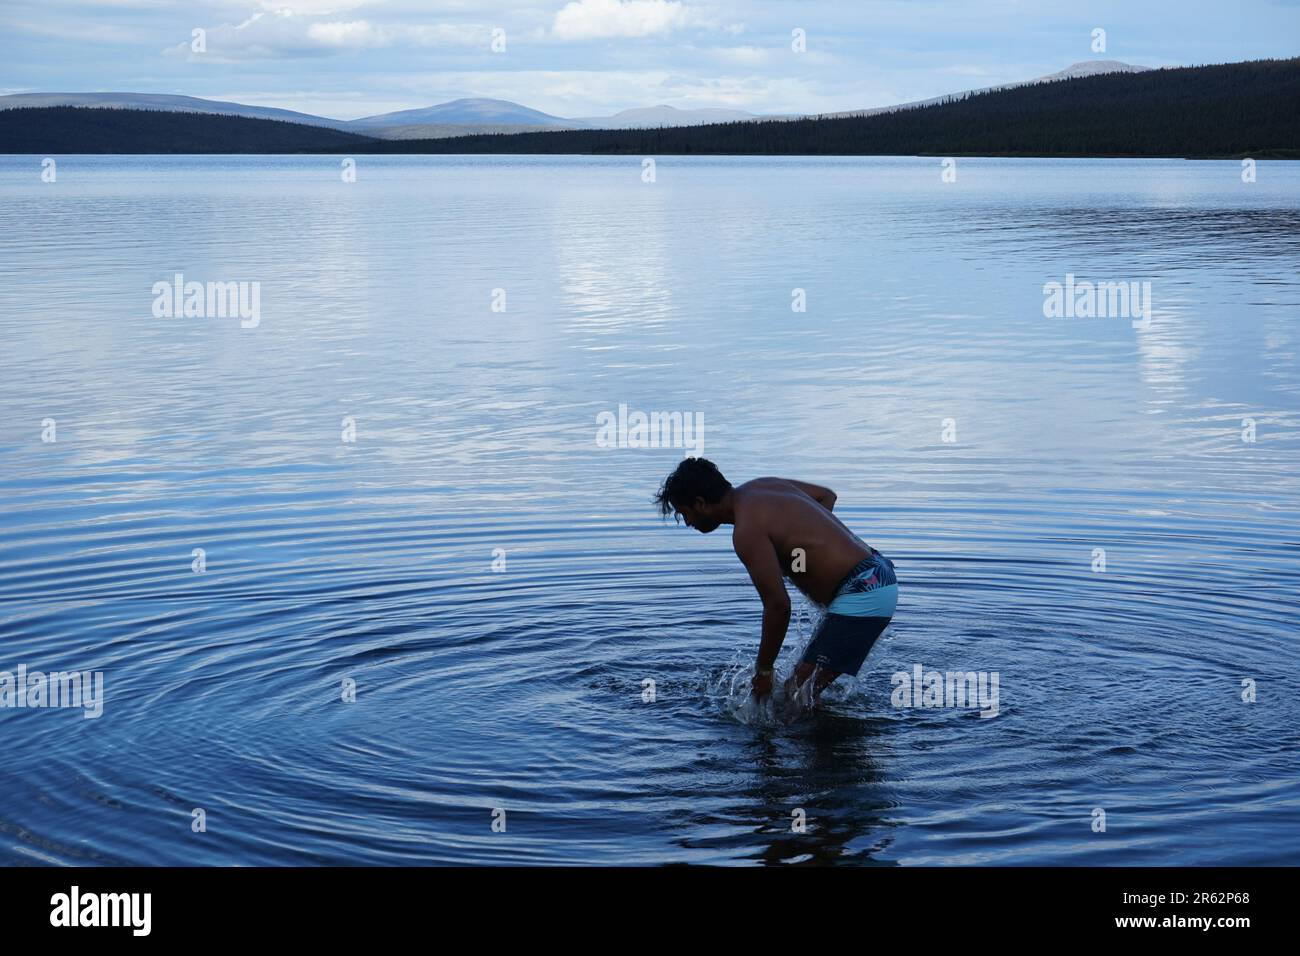 Ein ruhiger Blick auf den See mit klarem, kaltblauem Wasser. Ein Mann steht im See und erzeugt kreisförmige Wellen, die die Schönheit der abgelegenen Umgebung genießen. Stockfoto